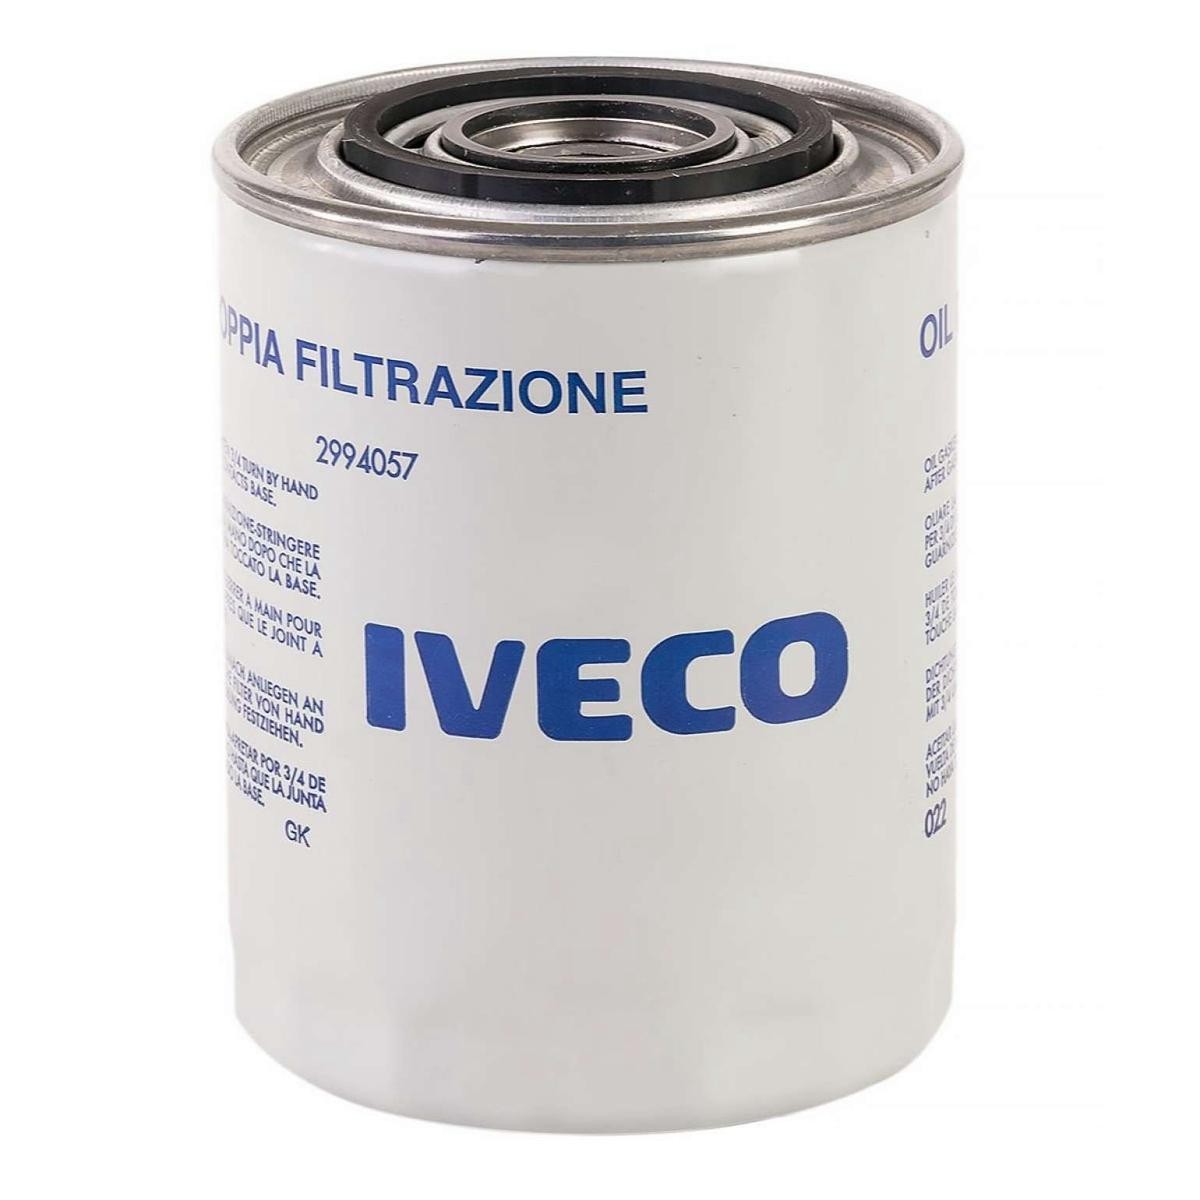 IVECO 2994057 Filtro olio 190 2047